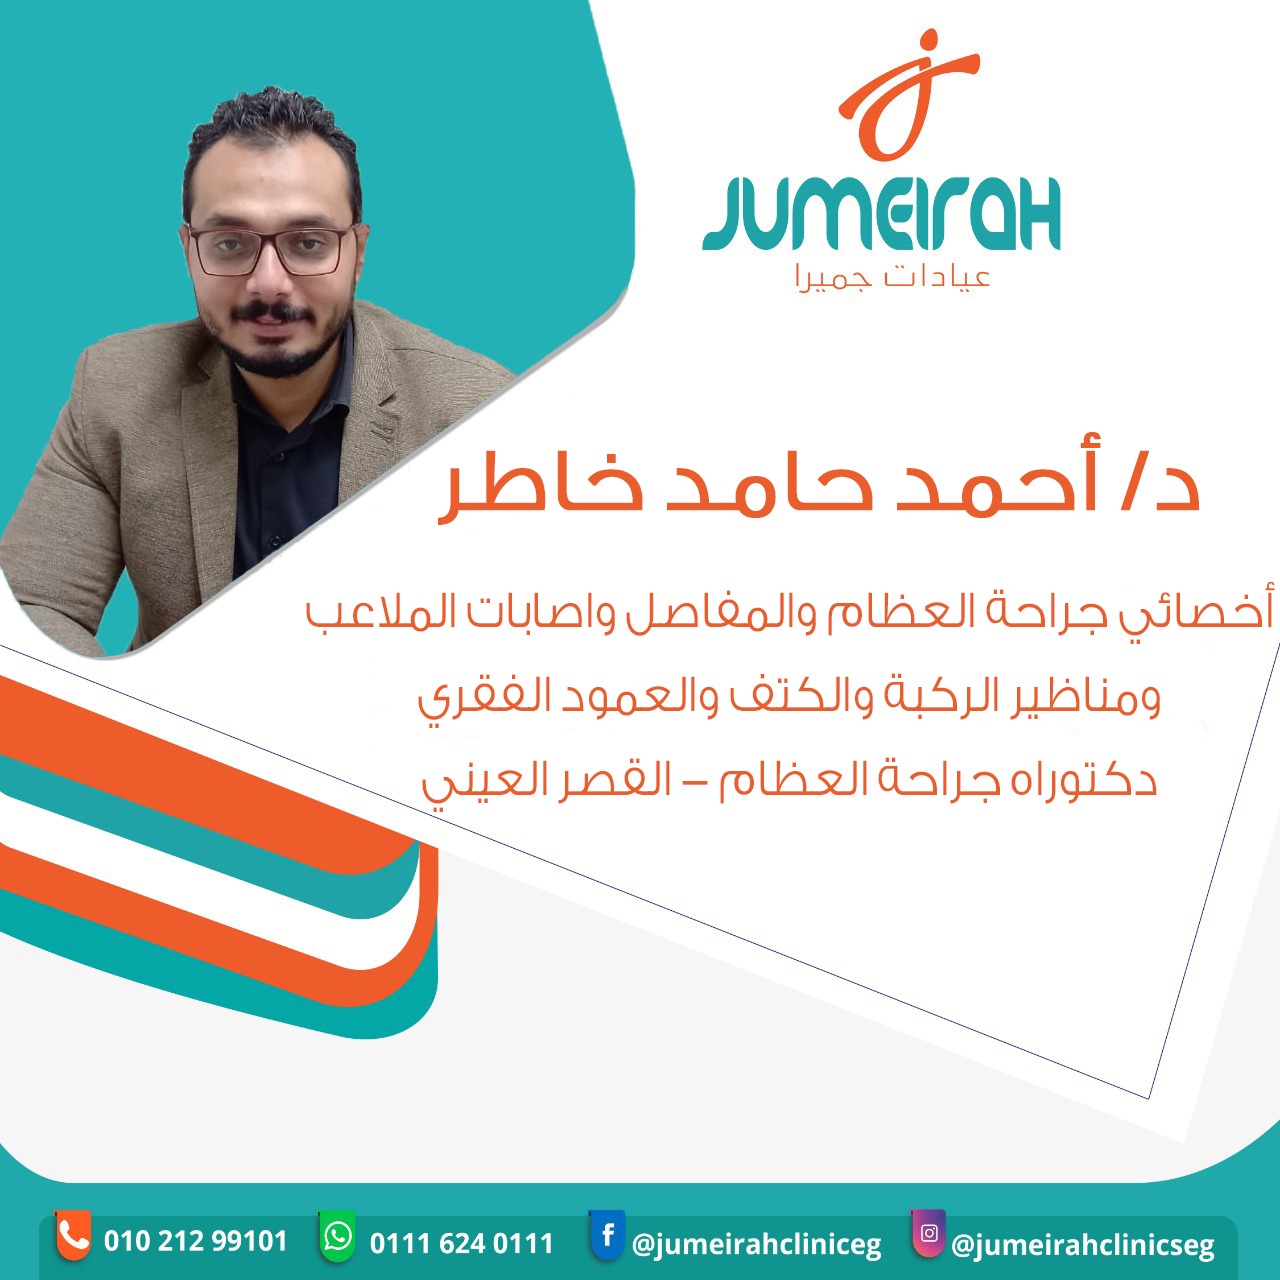 Dr. Ahmed Hamed Khater